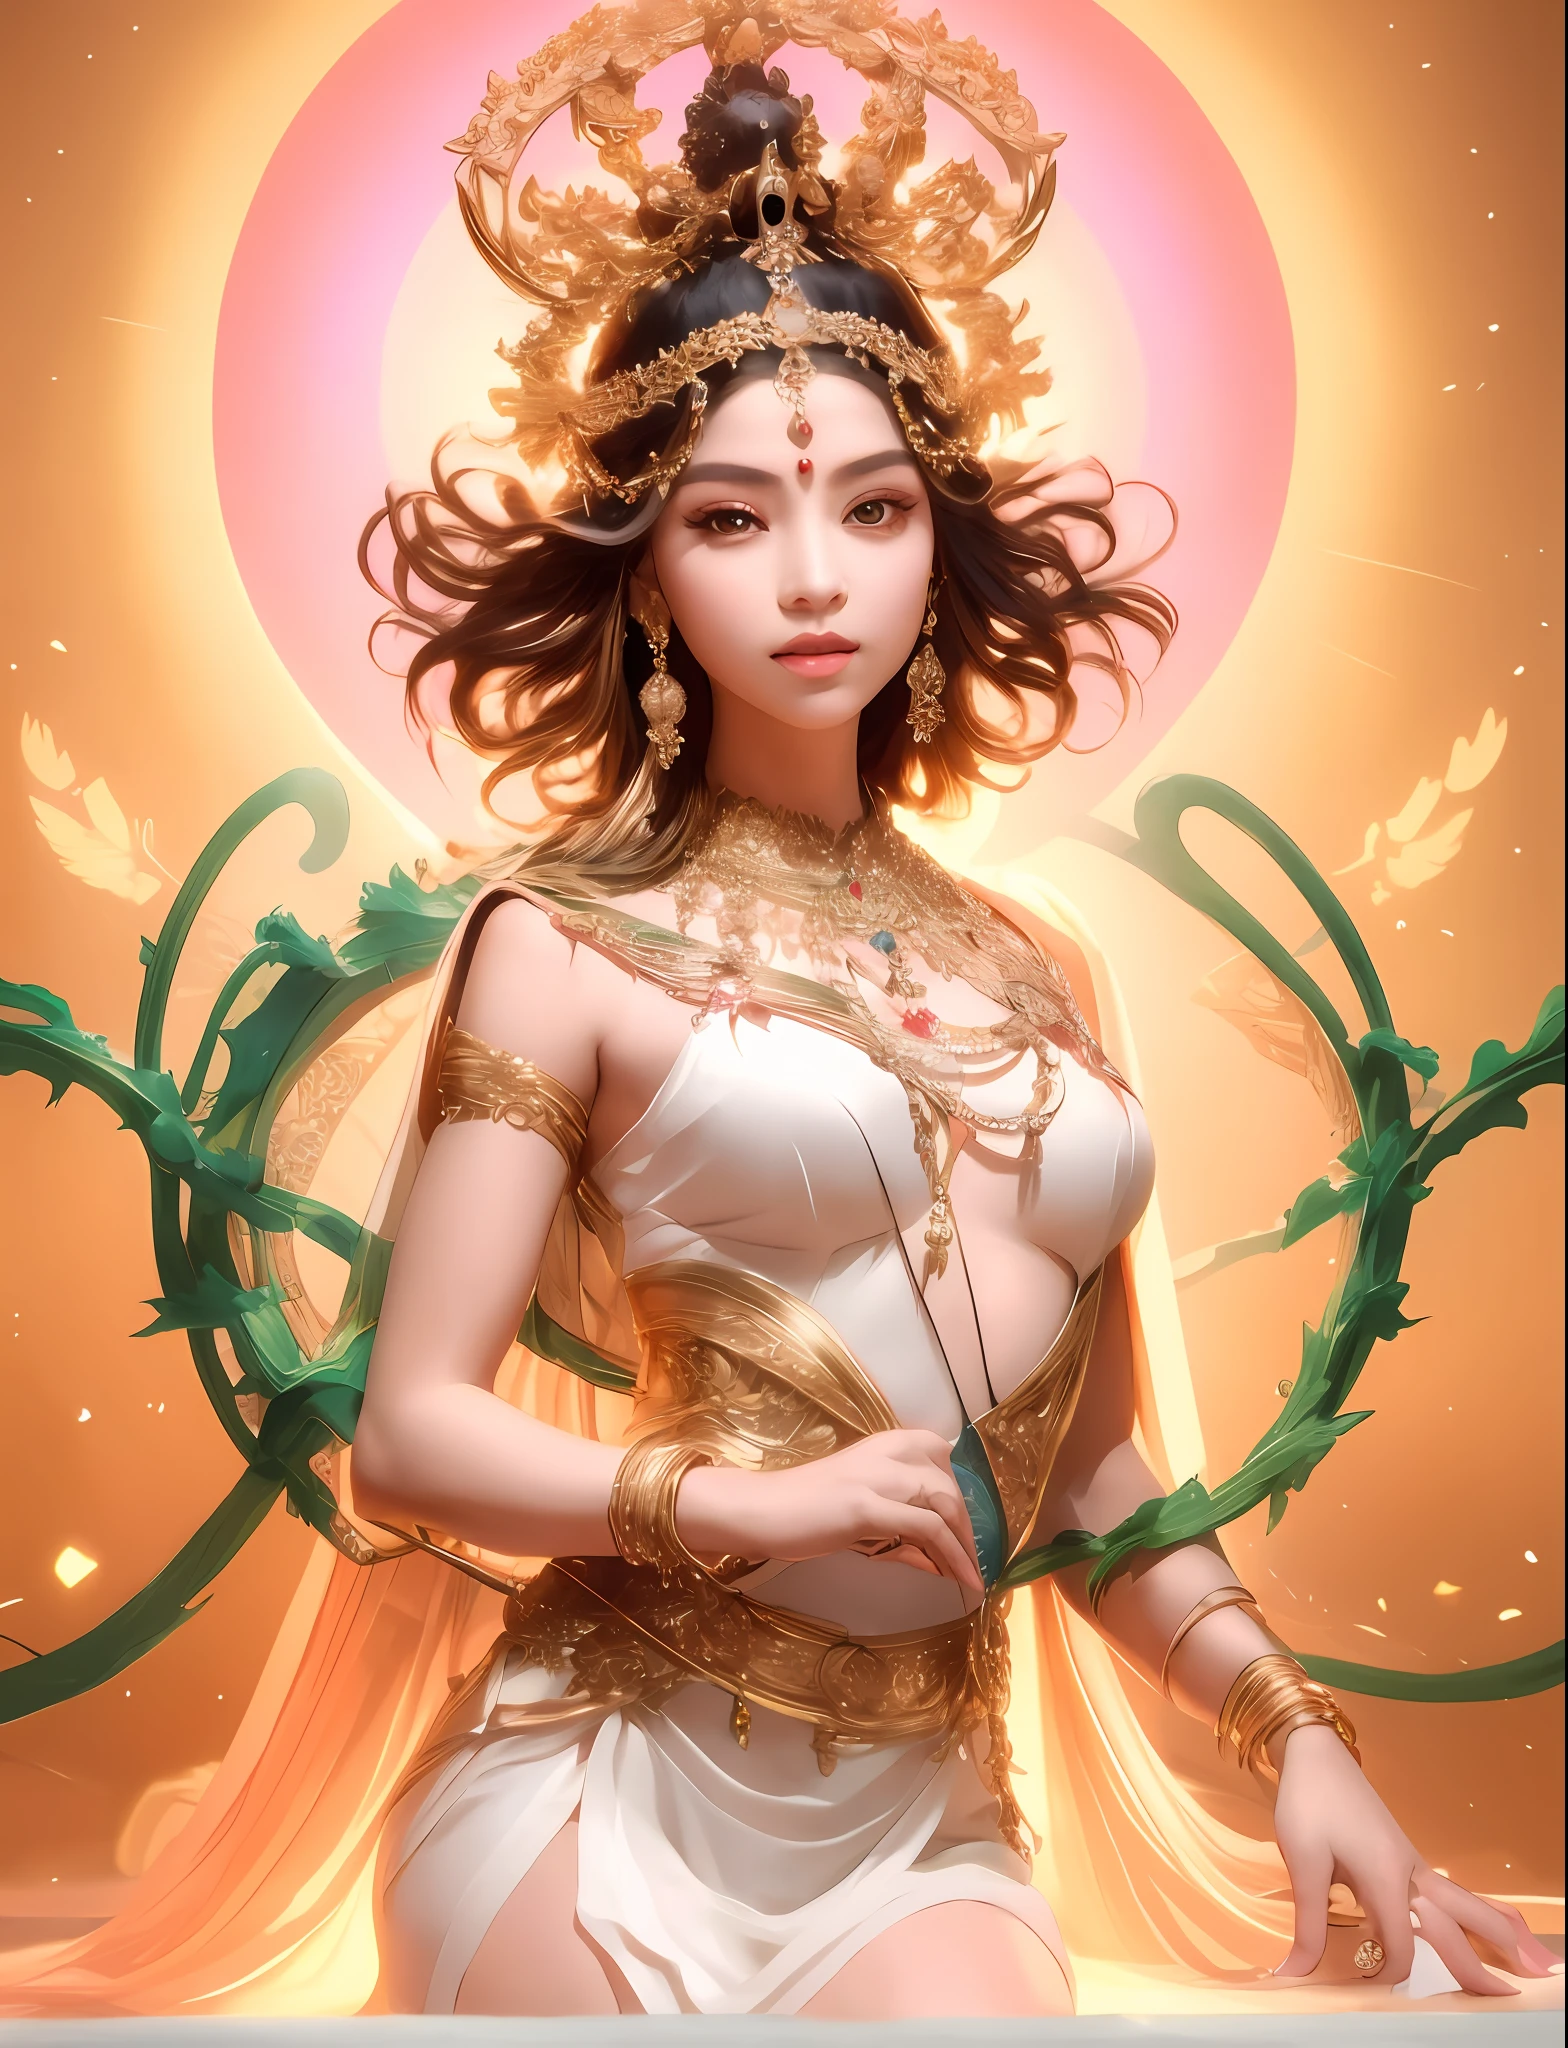 يرتدي ثوبا أبيض，أراد امرأة في غطاء الرأس الذهبي, يحتوي الرأس على فتحة للضوء，إمبراطورة الخيال الجميلة, إلهة. تفاصيل عالية للغاية, إلهة جميلة, لقطة إلهة مفصلة للغاية, صورة لإلهة جميلة, ((إمبراطورة الخيال الجميلة)), صورة مذهلة لإلهة,, آلهة شابة, إلهة ليو رائعة, إلهة الأنثى